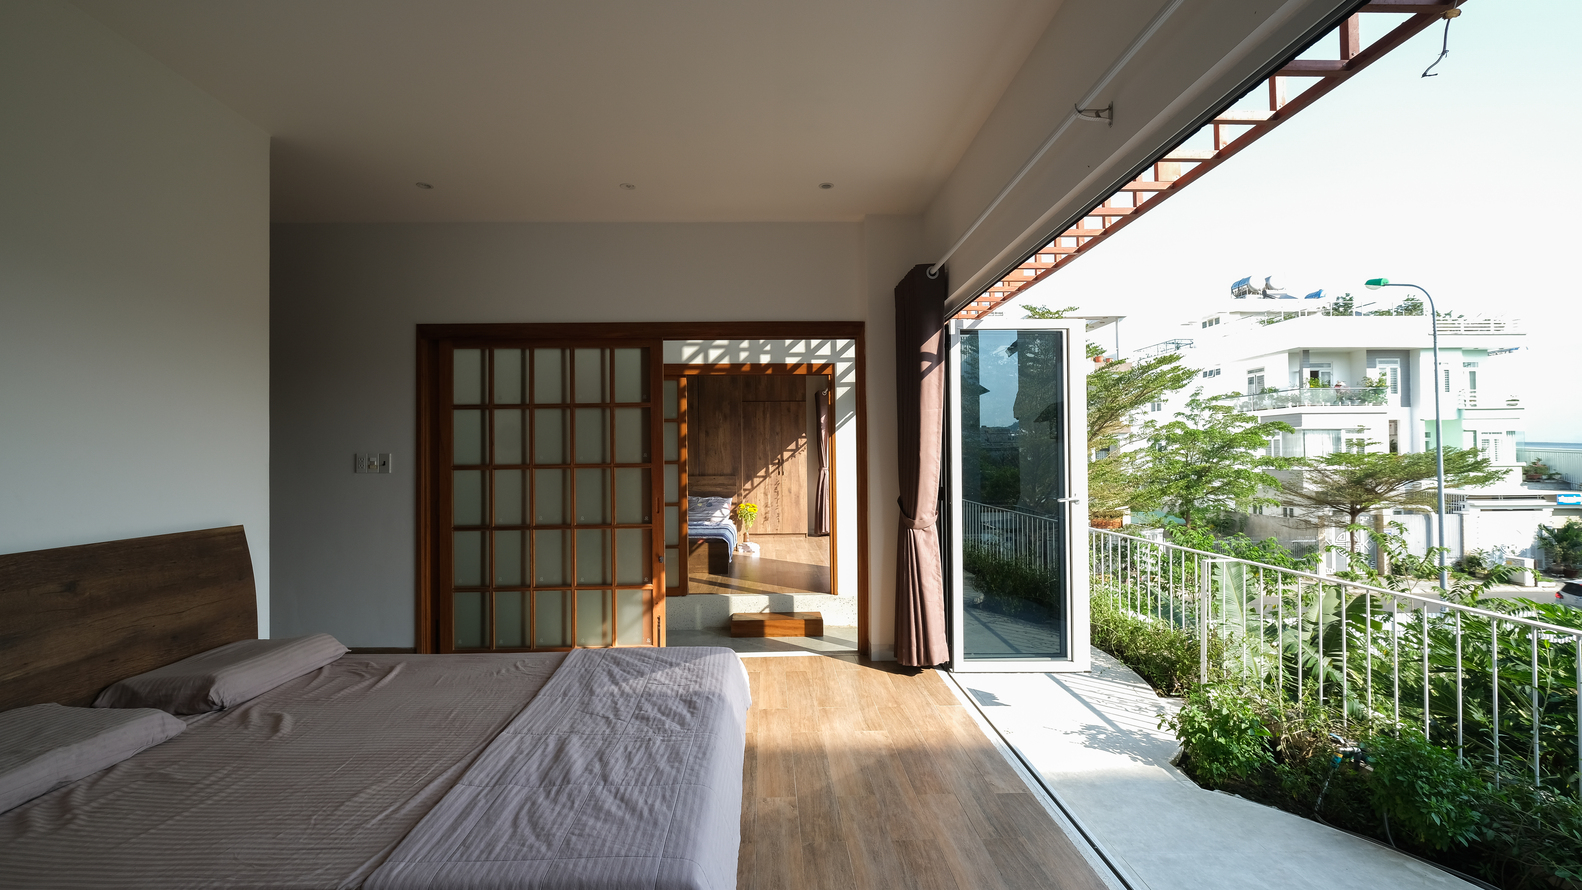 Các phòng ngủ được phân vùng với nhau bằng cửa trượt kiểu Nhật nên tiết kiệm diện tích và trông gọn gàng hơn so với cửa đóng mở thông thường.